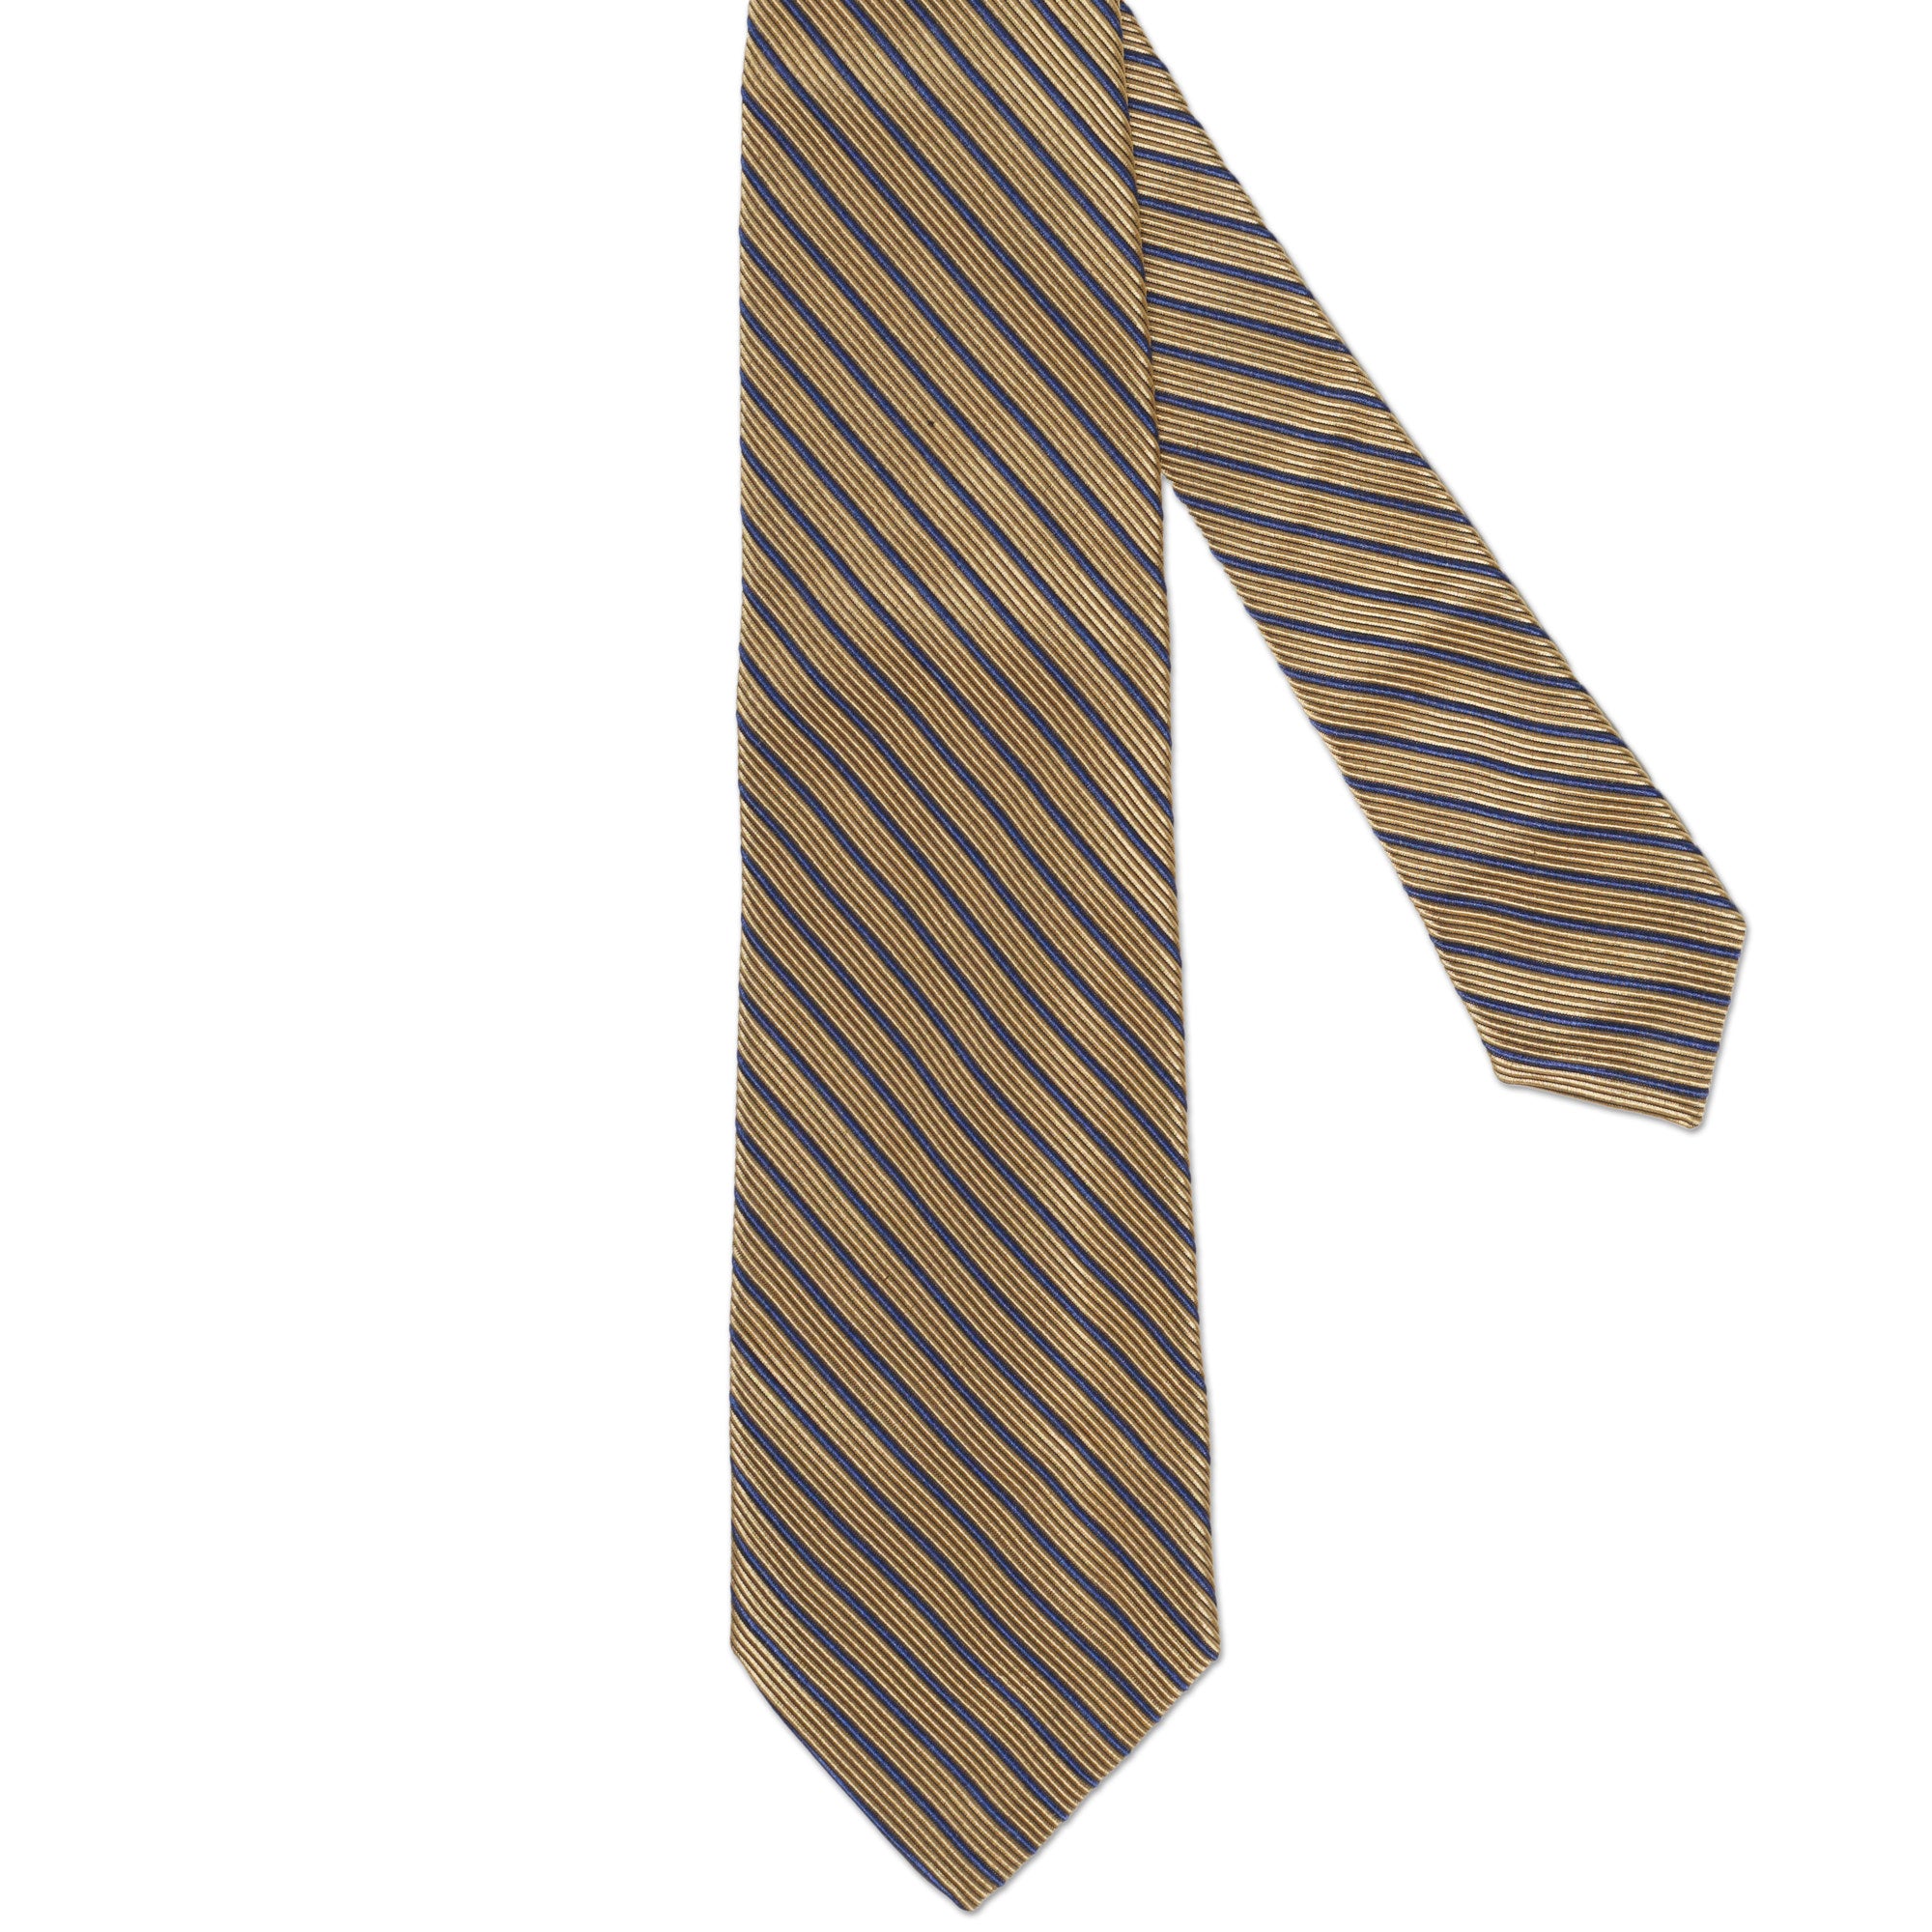 LUCIANO BARBERA Handmade Gold Striped Design Silk-Cotton Tie LUCIANO BARBERA